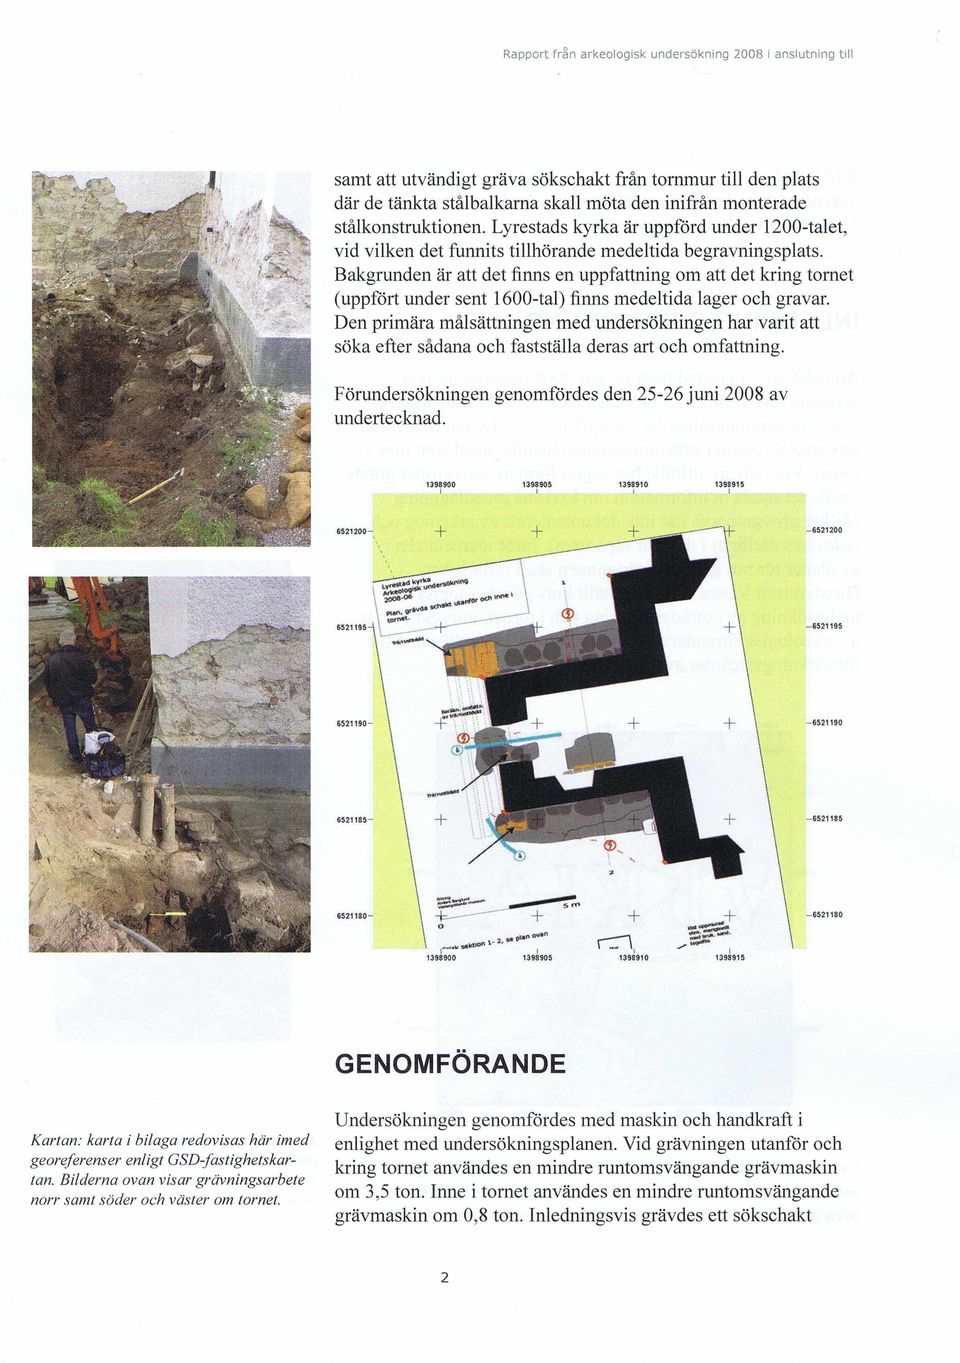 Bakgrunden är att det finns en uppfattning om att det kring tornet (uppfört under sent 1600-tal) finns medeltida lager och gravar.